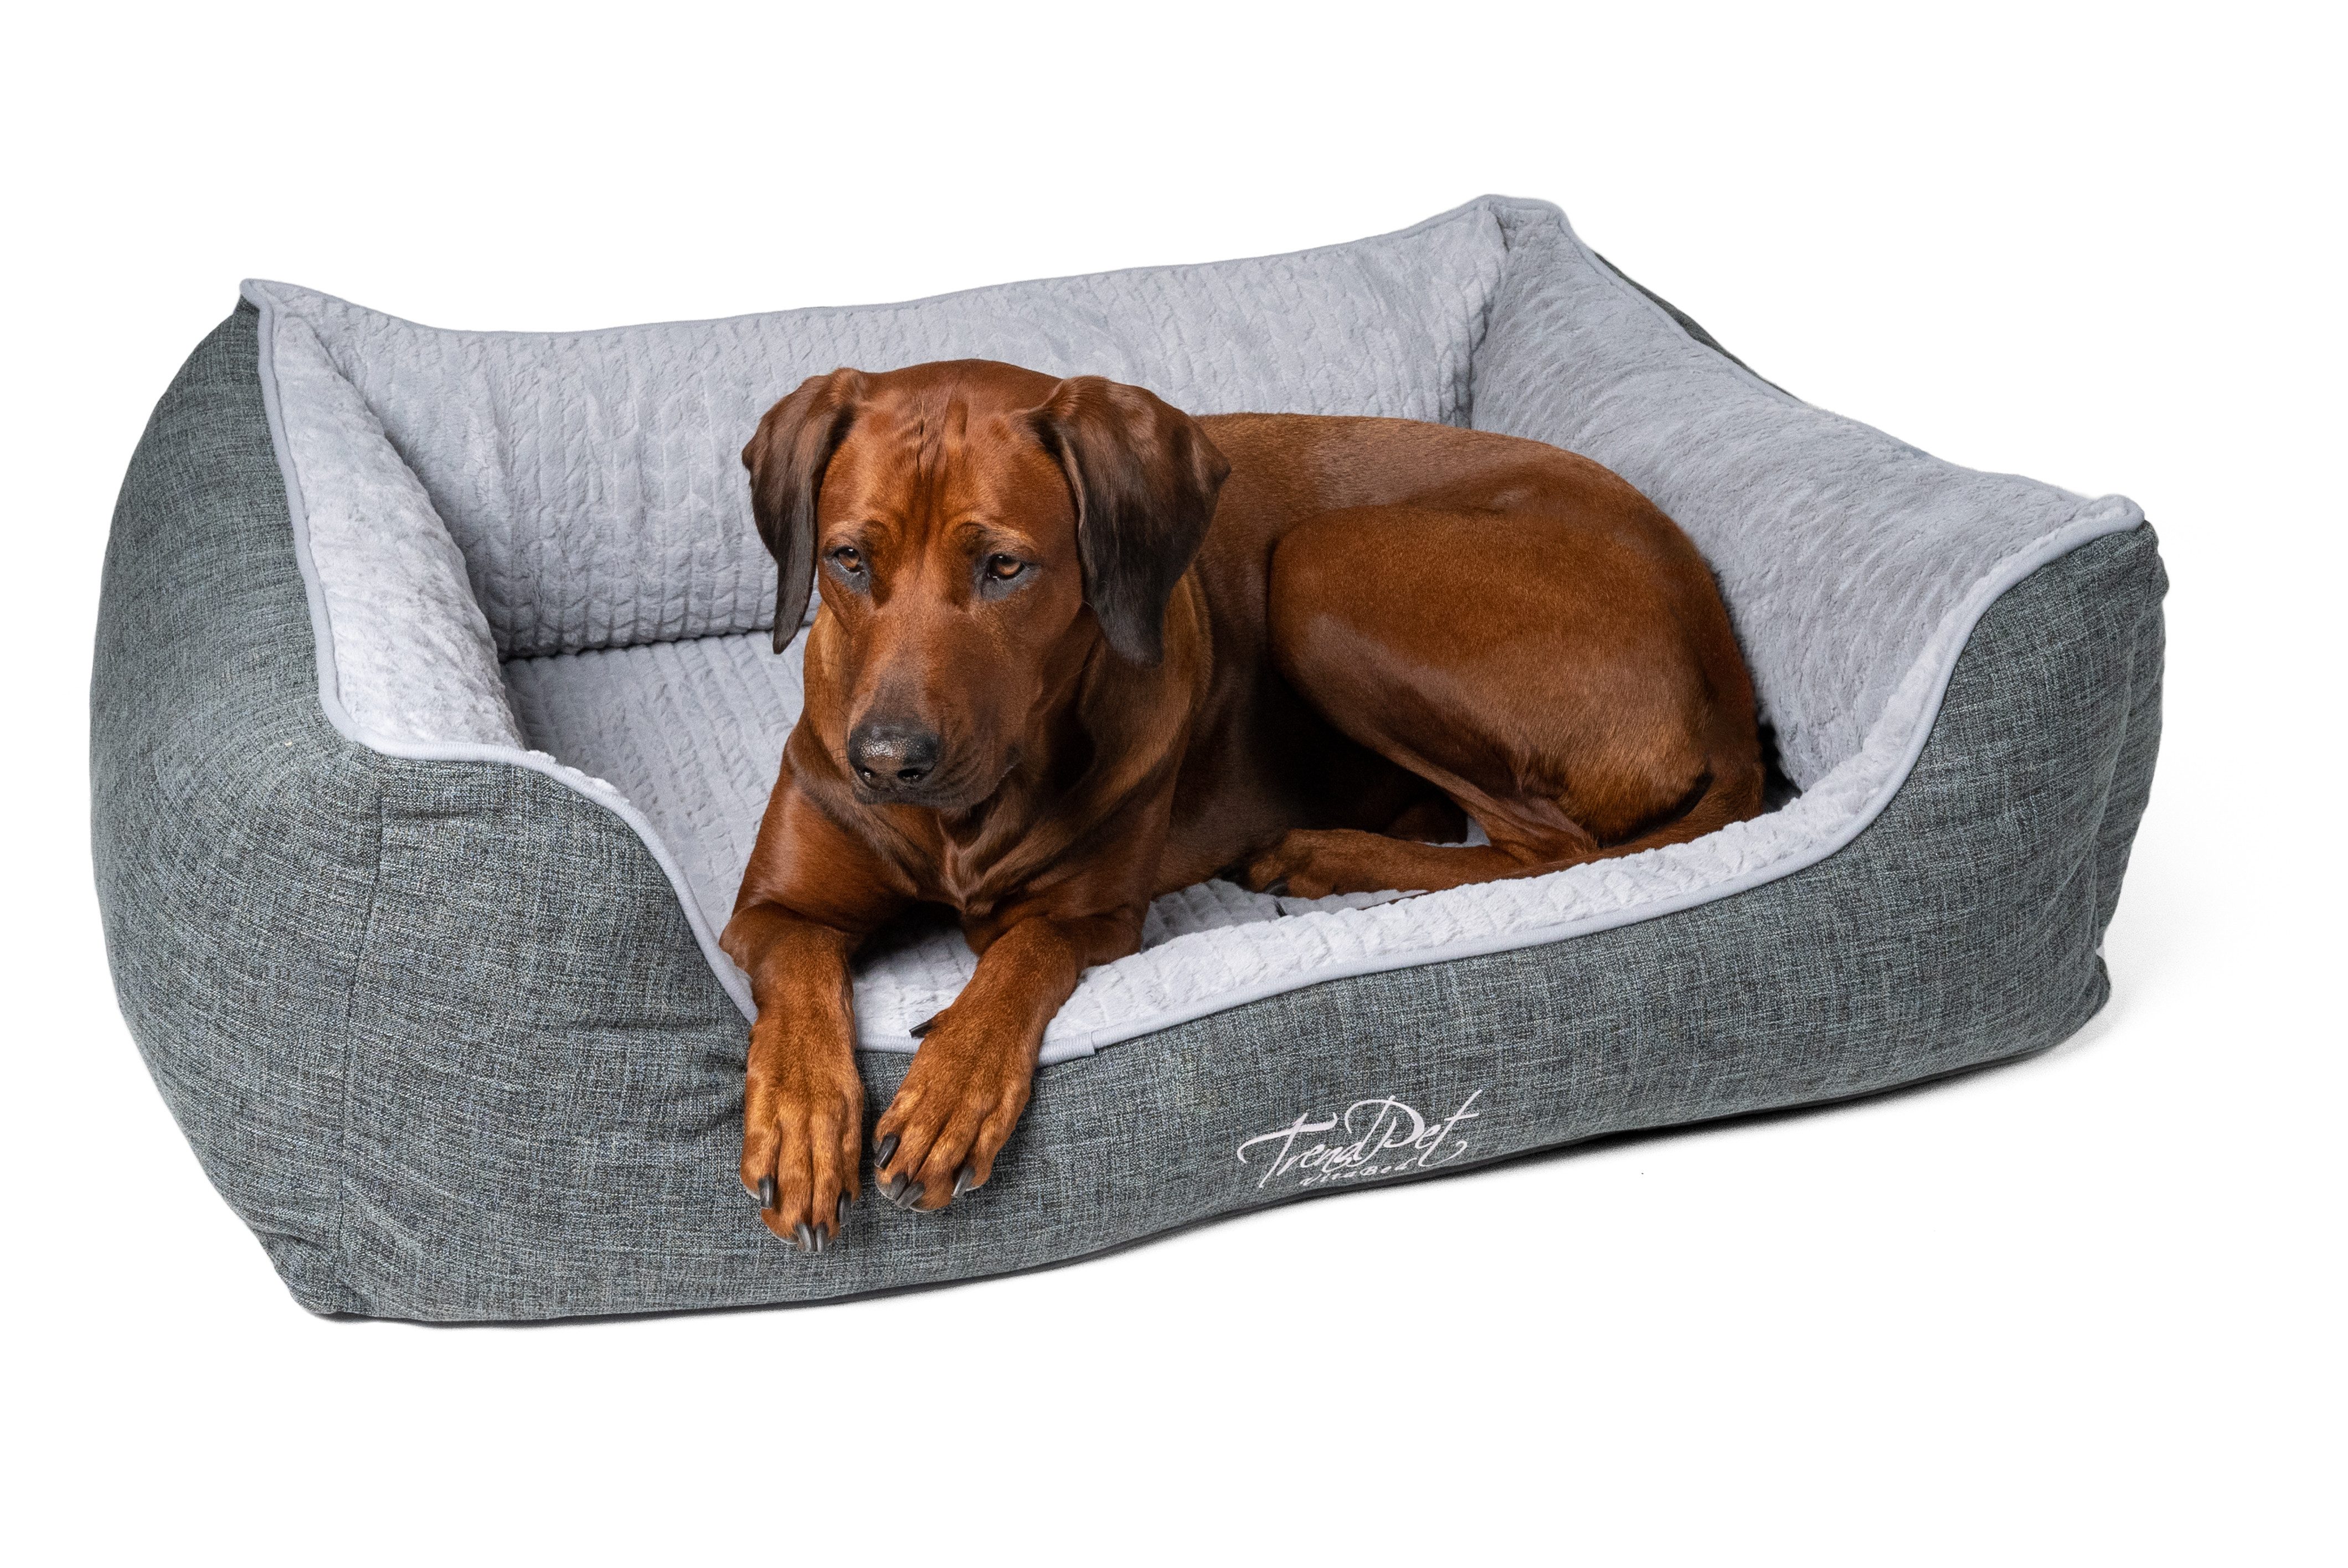 TrendPet Tierbett VitaBed Classic Grau - Orthopädisches Hundebett, in verschiedenen Größen erhältlich